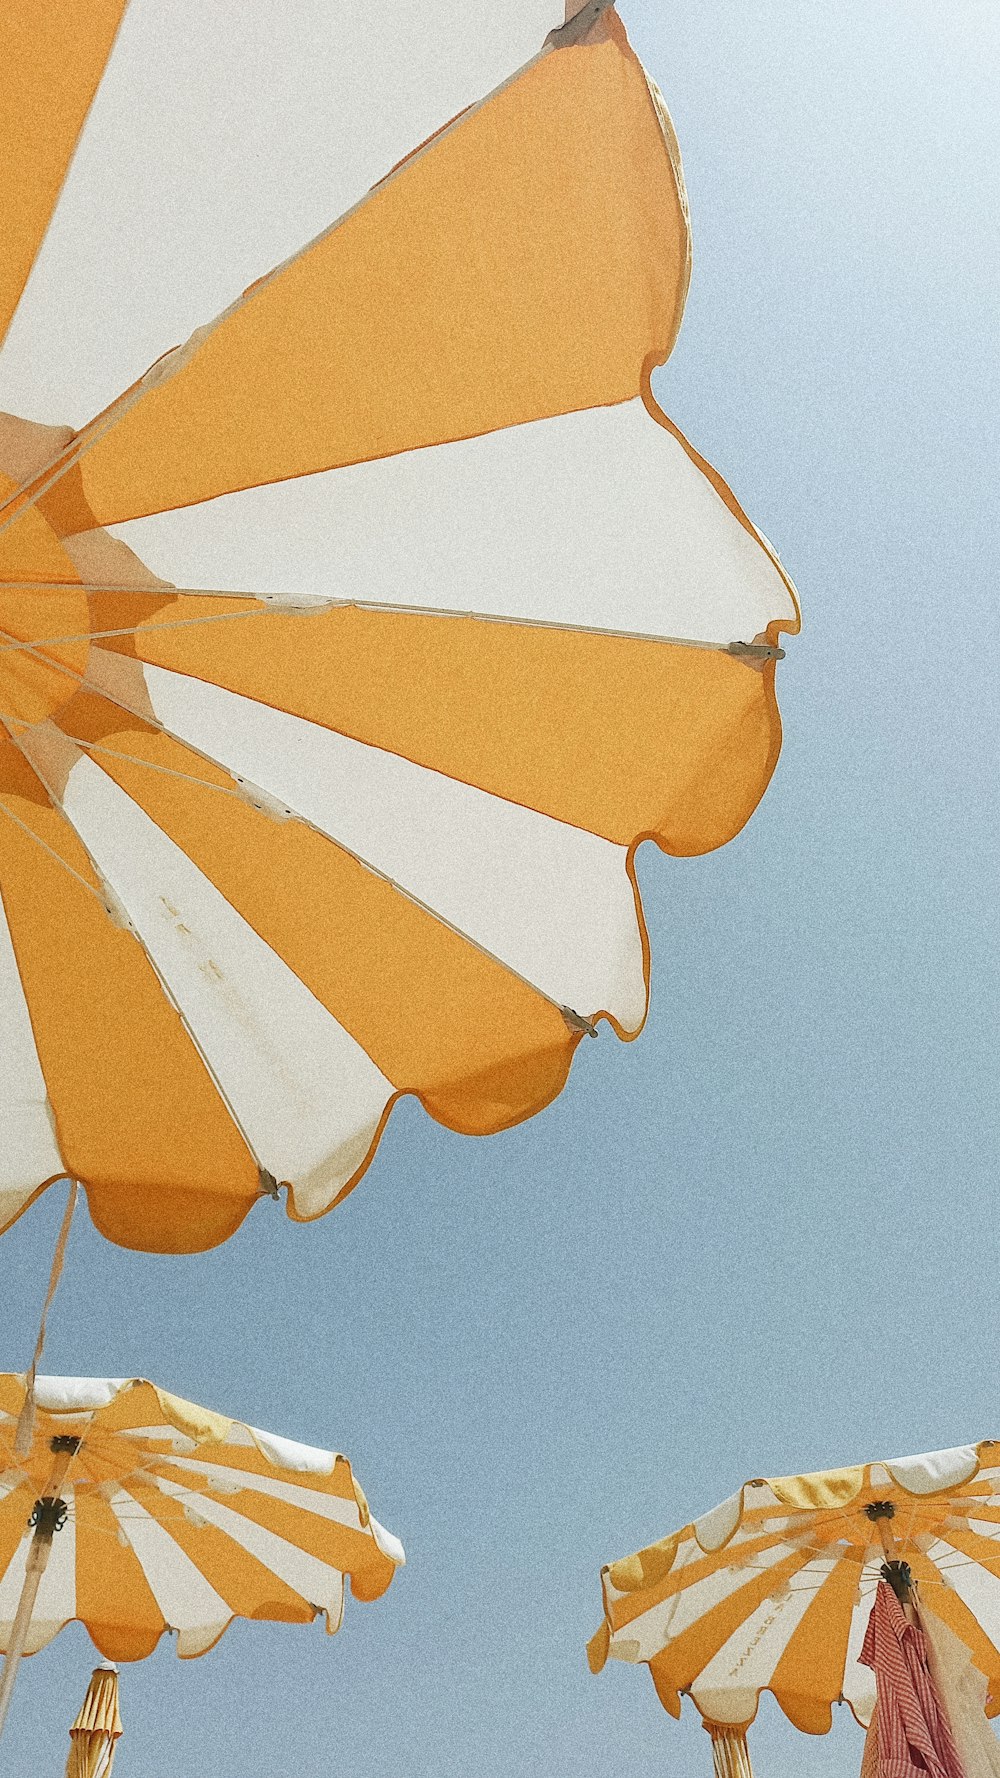 paraguas amarillo y naranja bajo el cielo azul durante el día